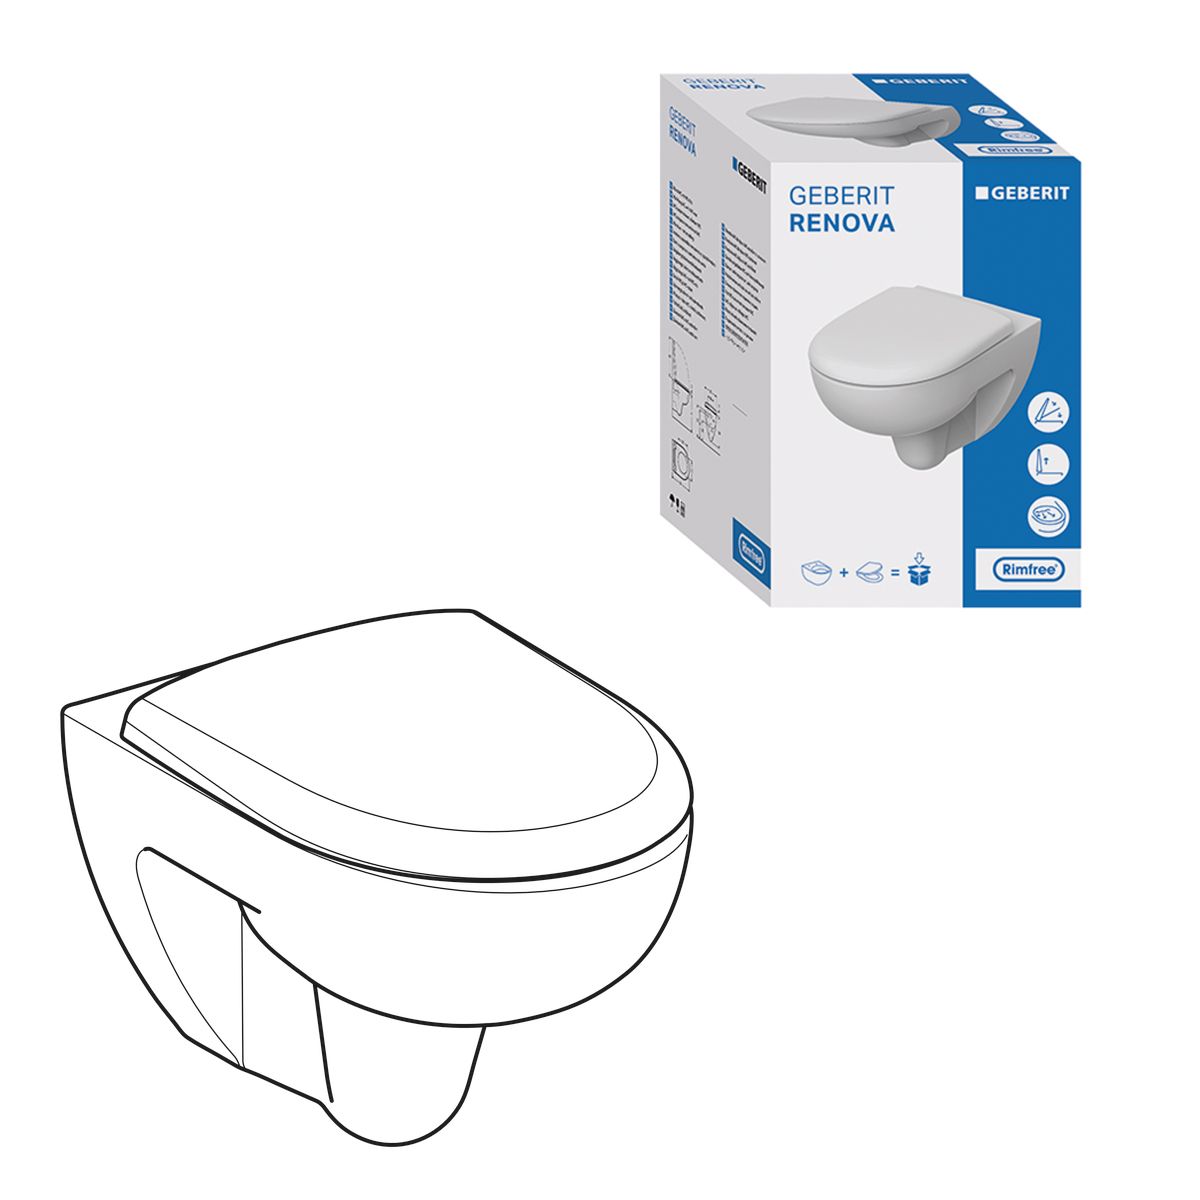 spülrandlos Tiefspül WC Geberit Gebäudetechnik Heizman24 - Handel Set WC und Quick-Release für Renova Haus- Wand mit Softclose | und Sitz